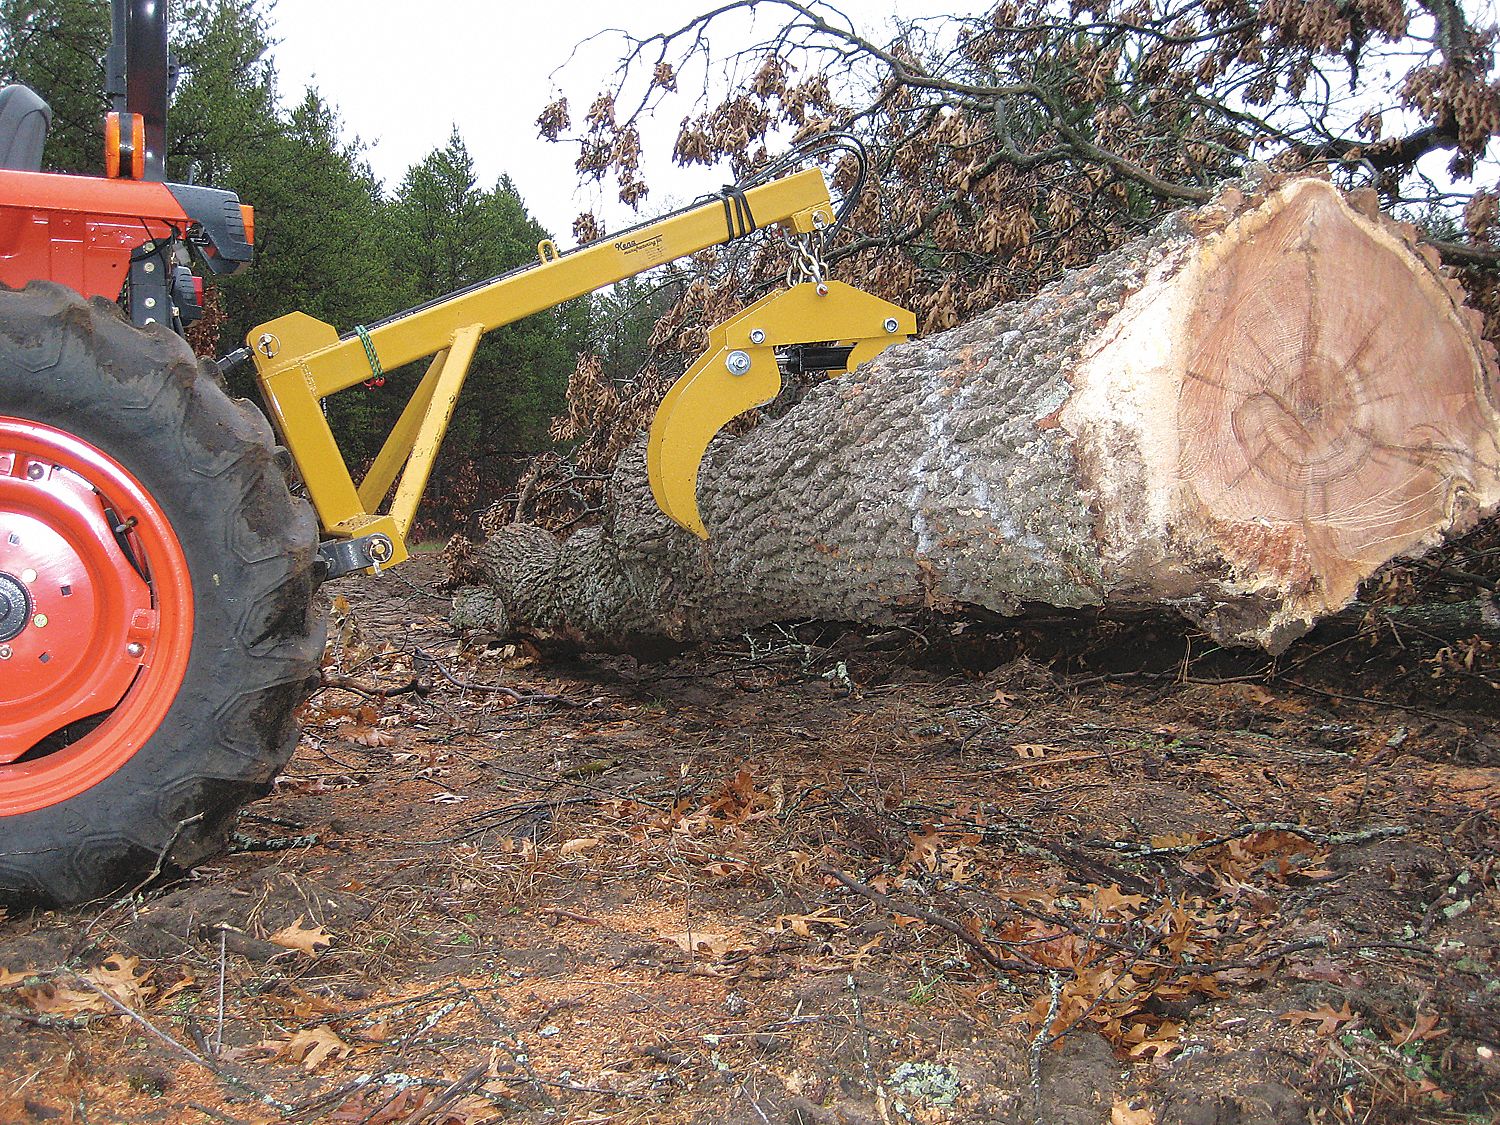 Logging Accessories